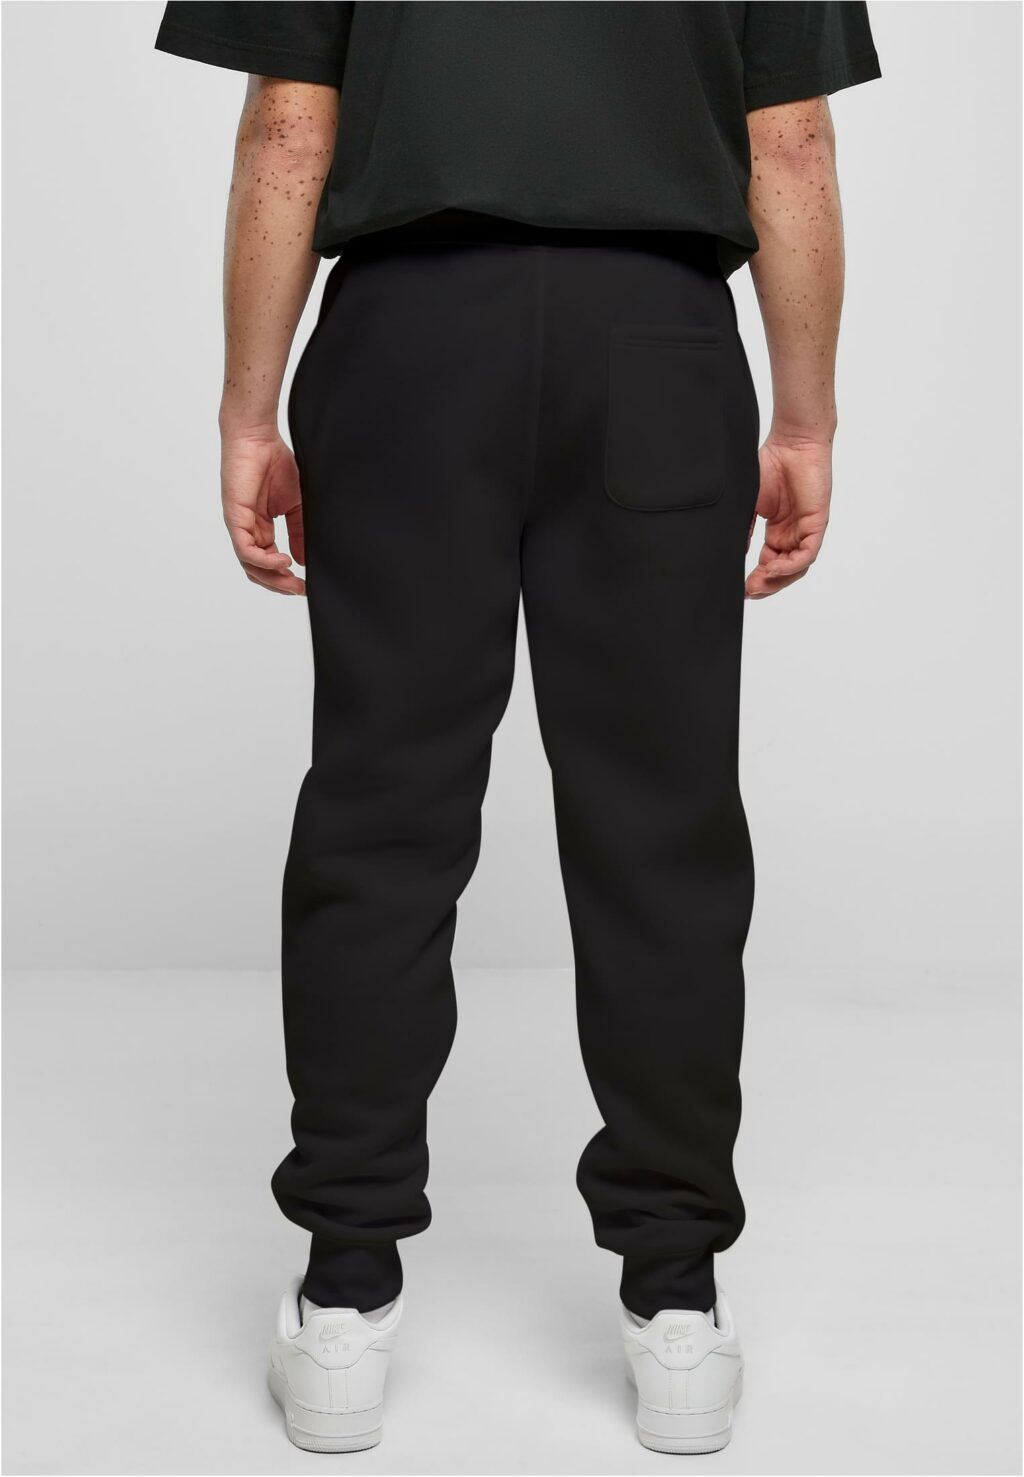 Southpole Knit Pants black SP1570A